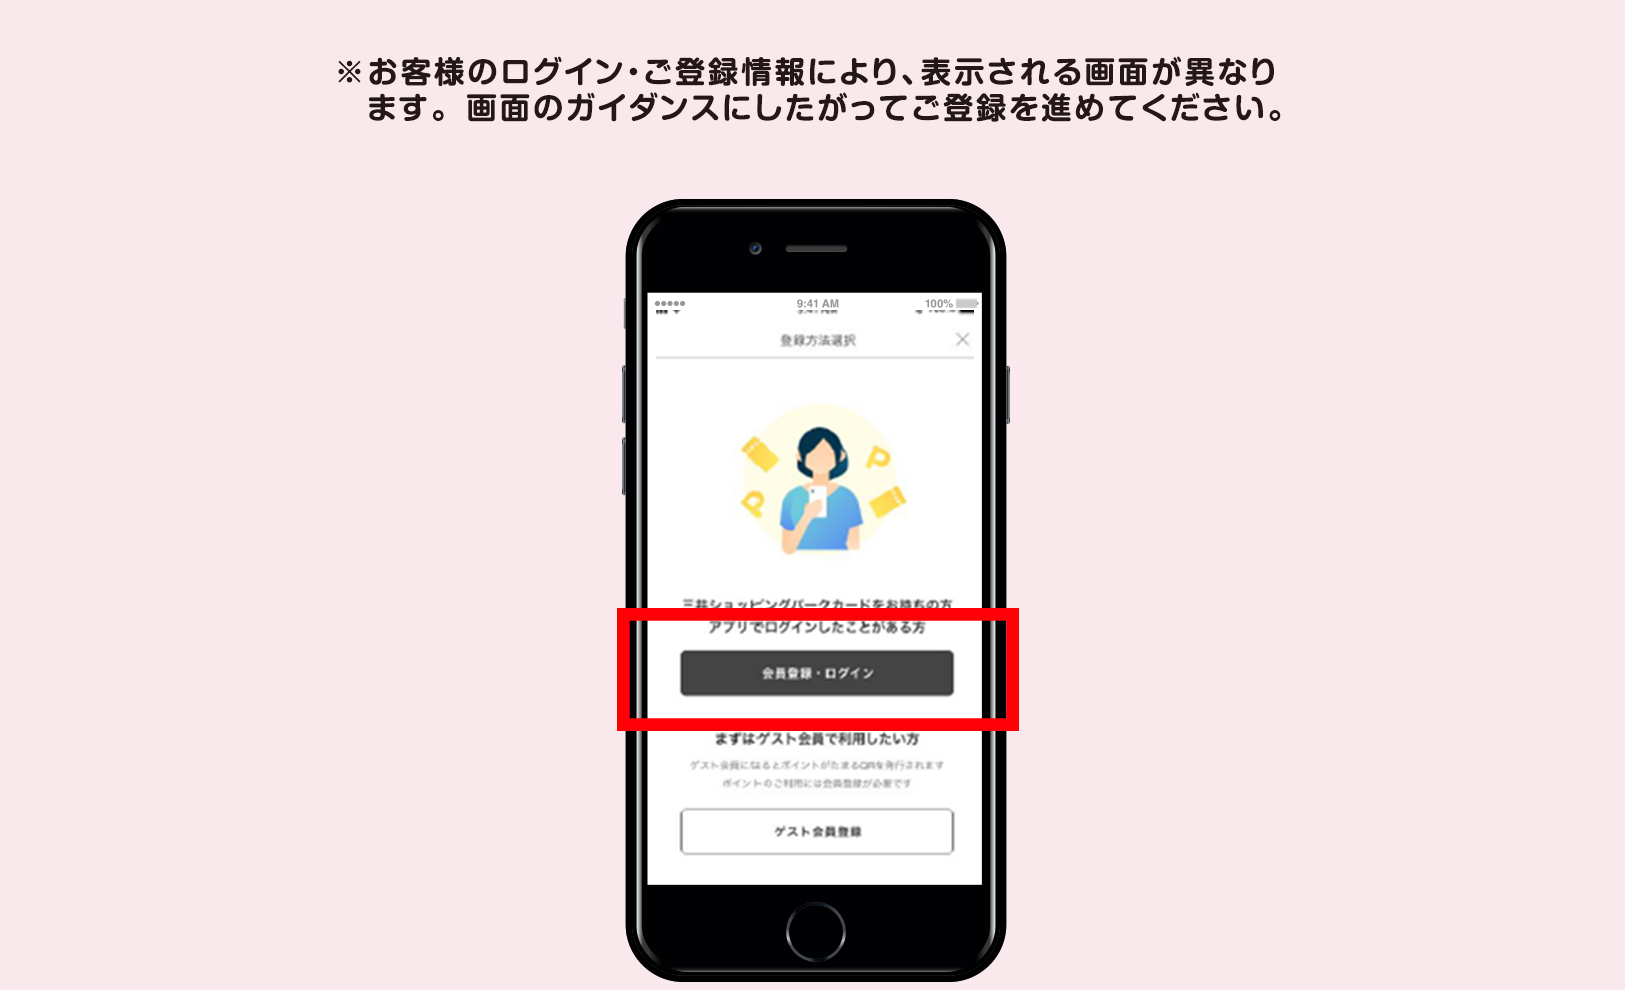 1. 三井ショッピングパークアプリを起動し「会員登録・ログイン」をタップ